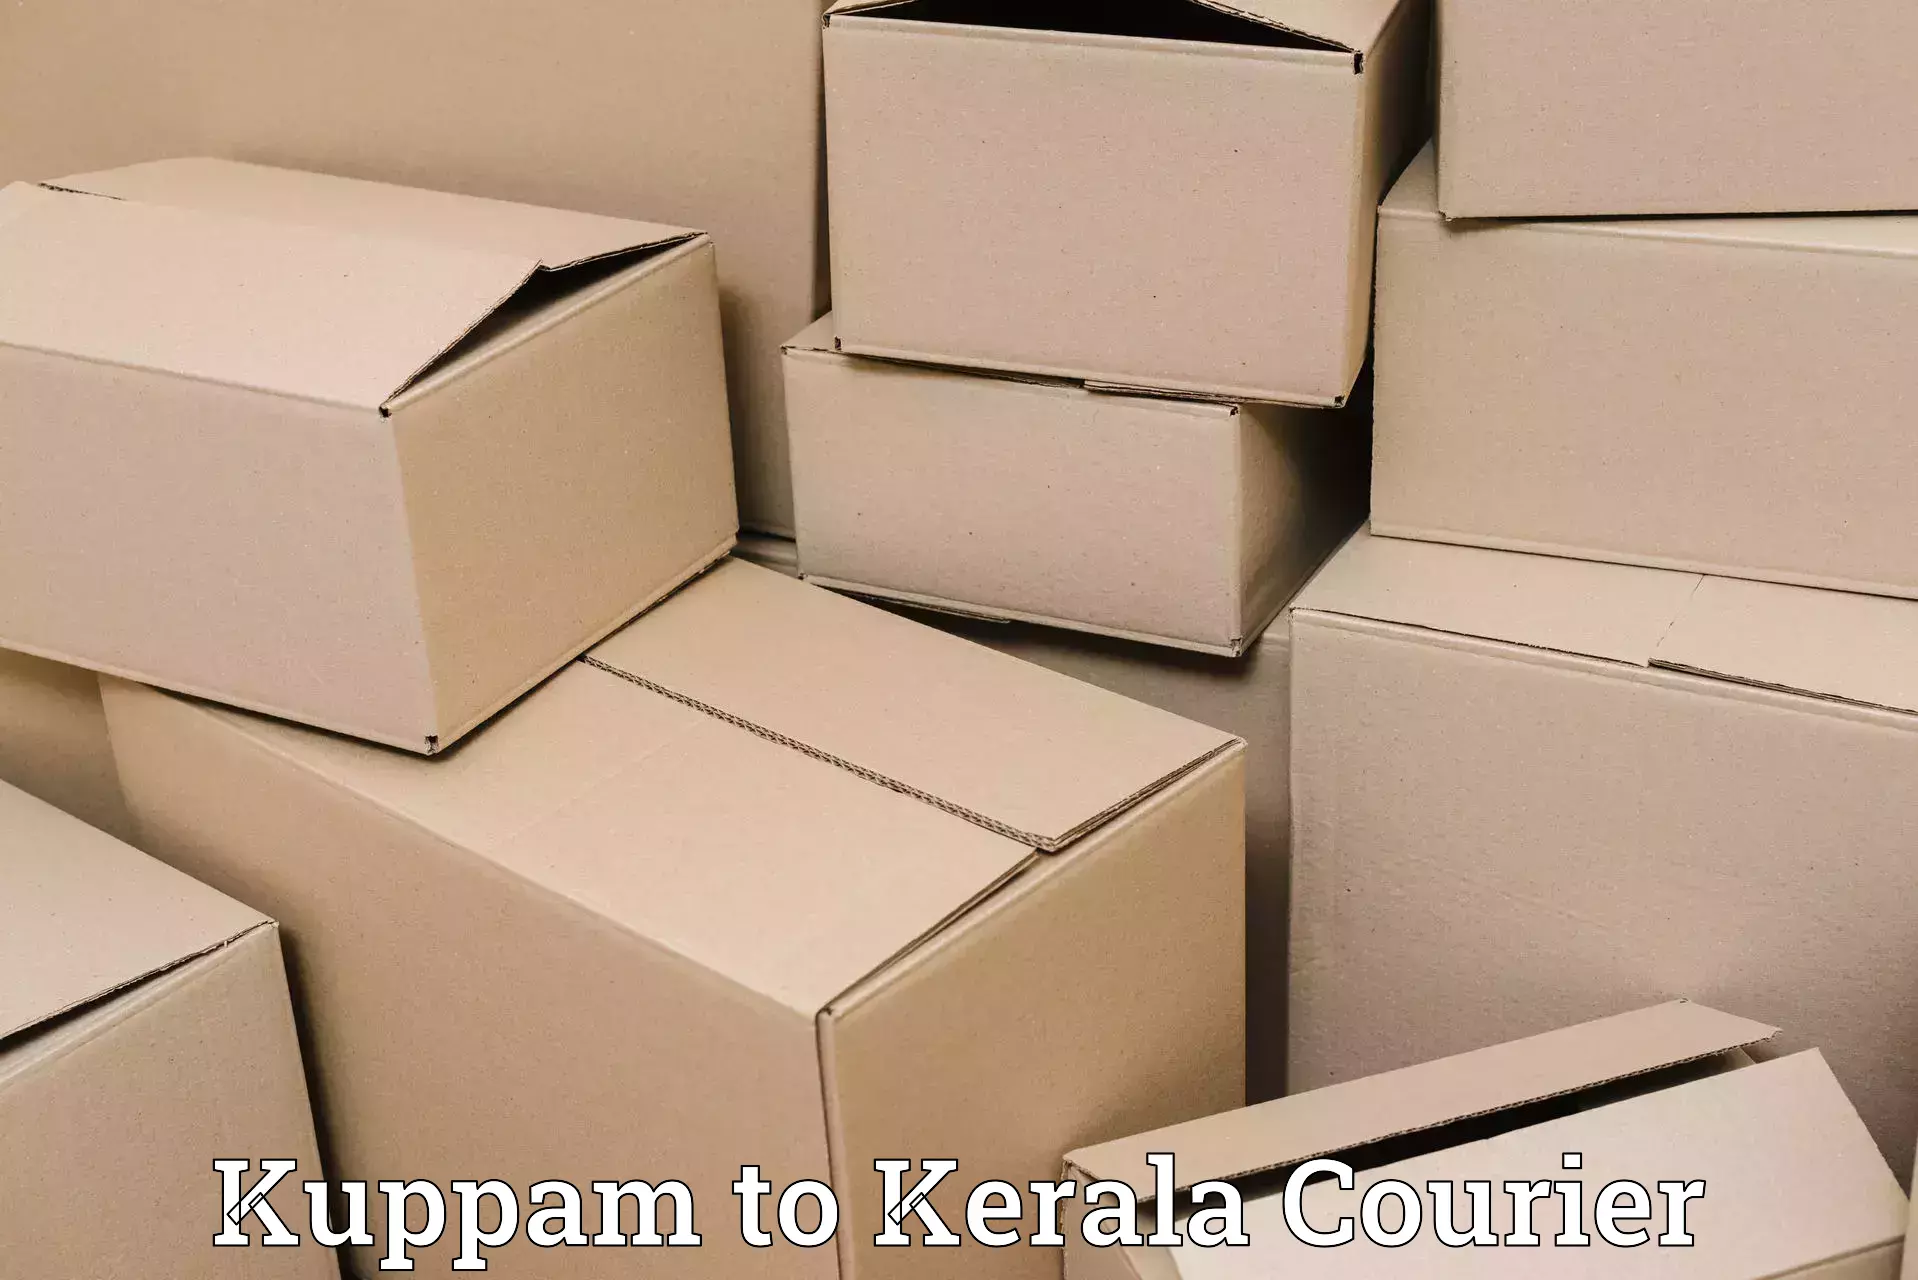 Flexible shipping options Kuppam to Kerala